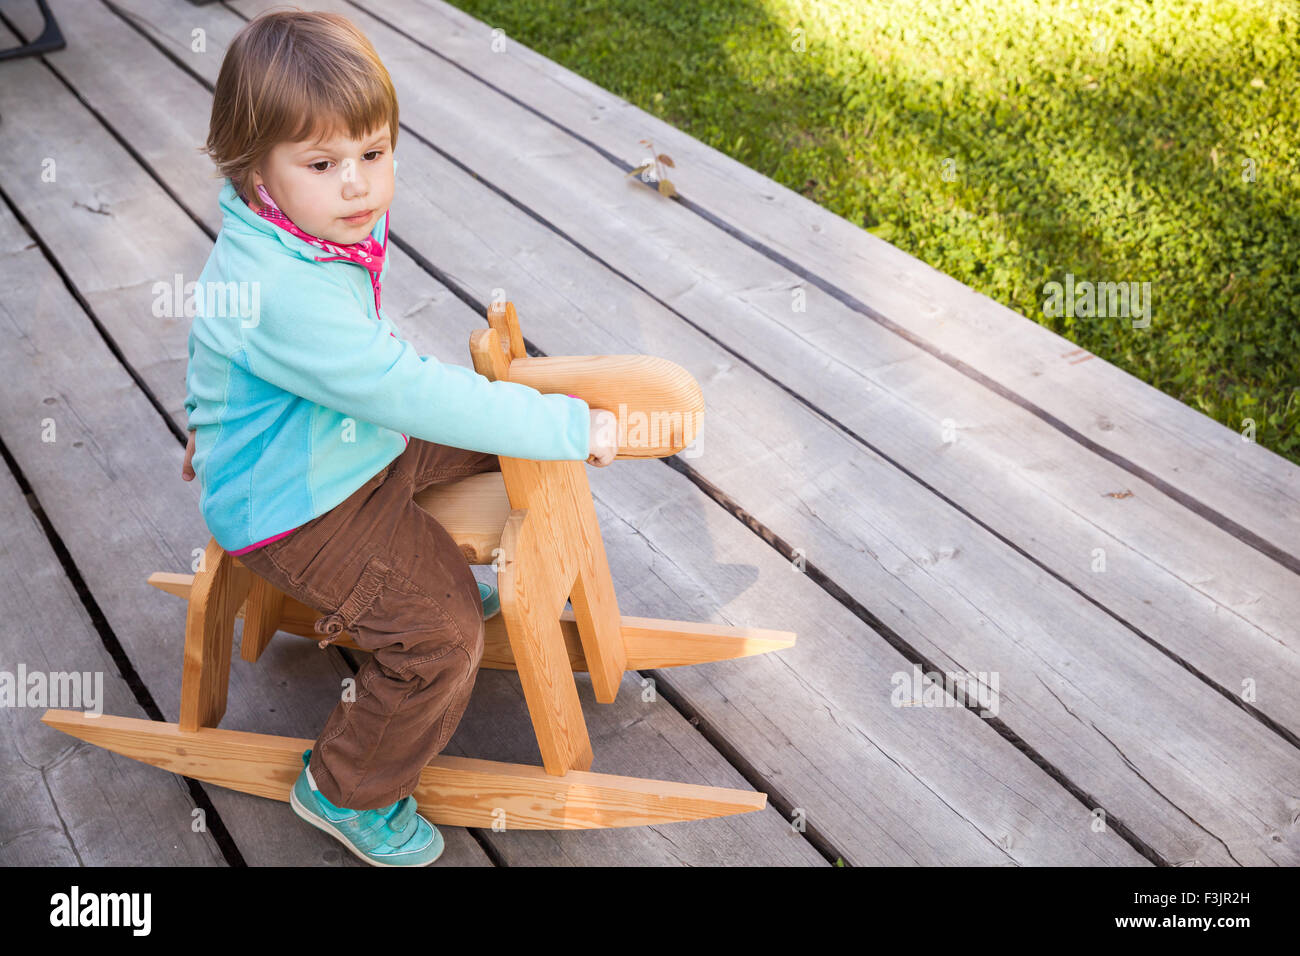 Outdoor portrait of cute young girl riding blond bébé jouet cheval de bois Banque D'Images